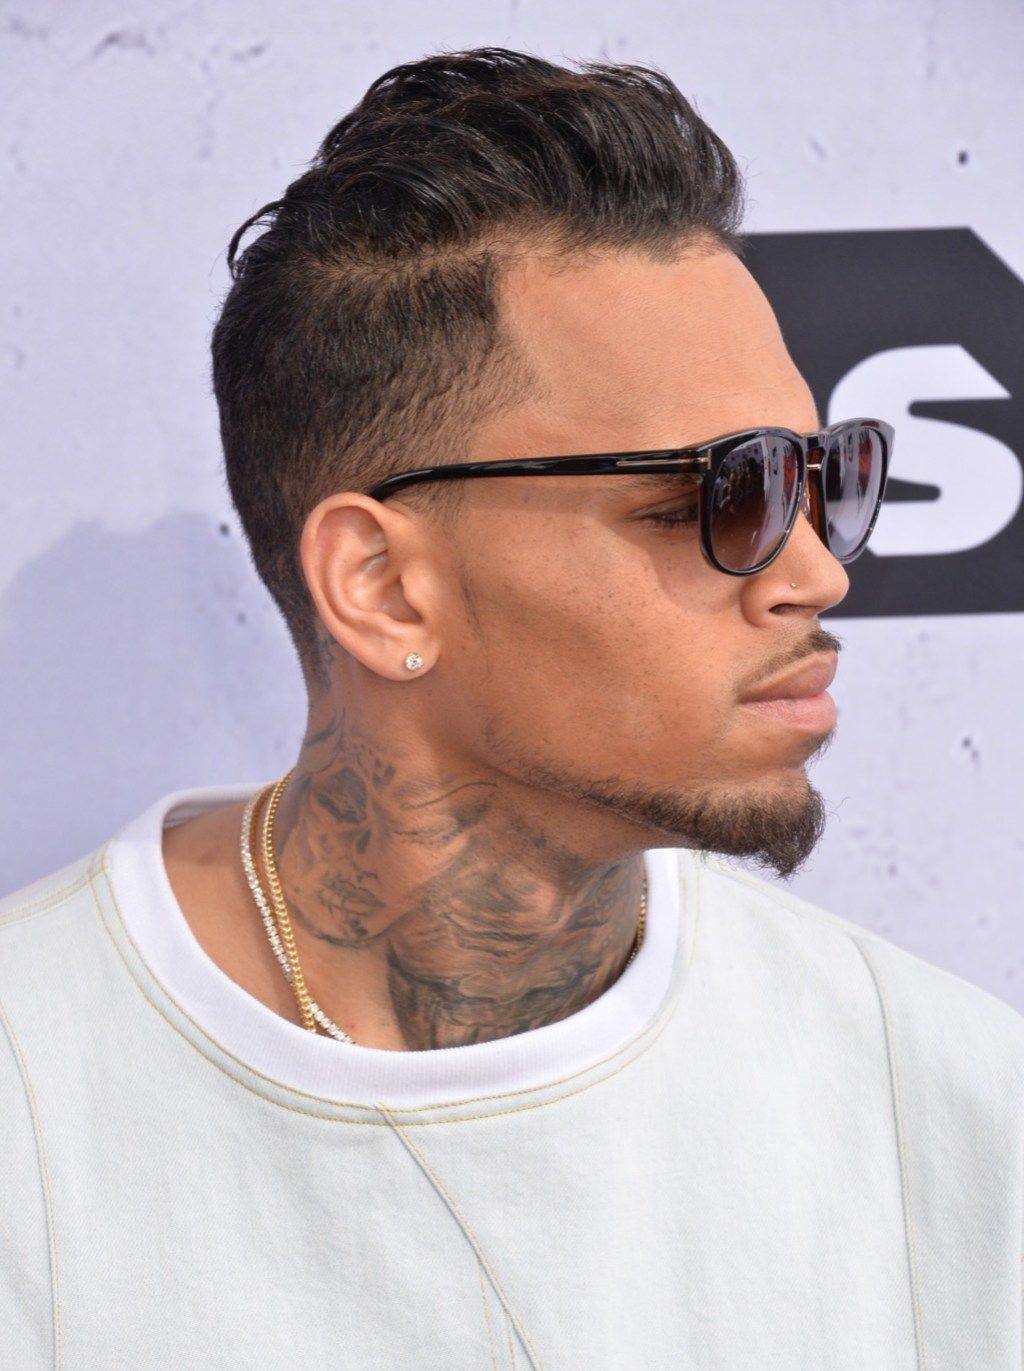 Những bài hát của Chris Brown được viết bởi những ngôi sao lớn